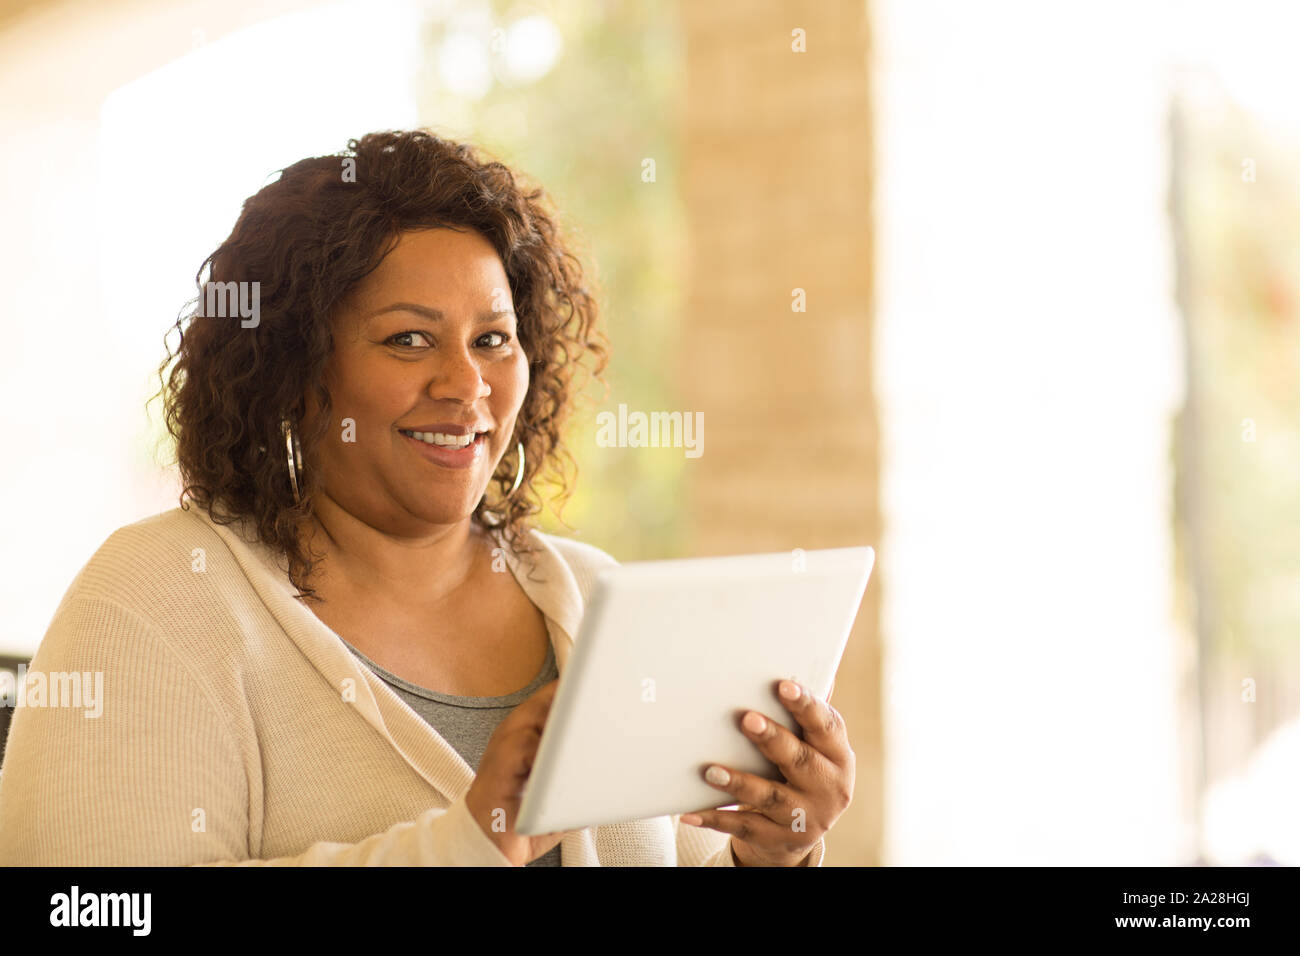 Lächelnd afrikanische amerikanische Frau an einer Tablette. Stockfoto